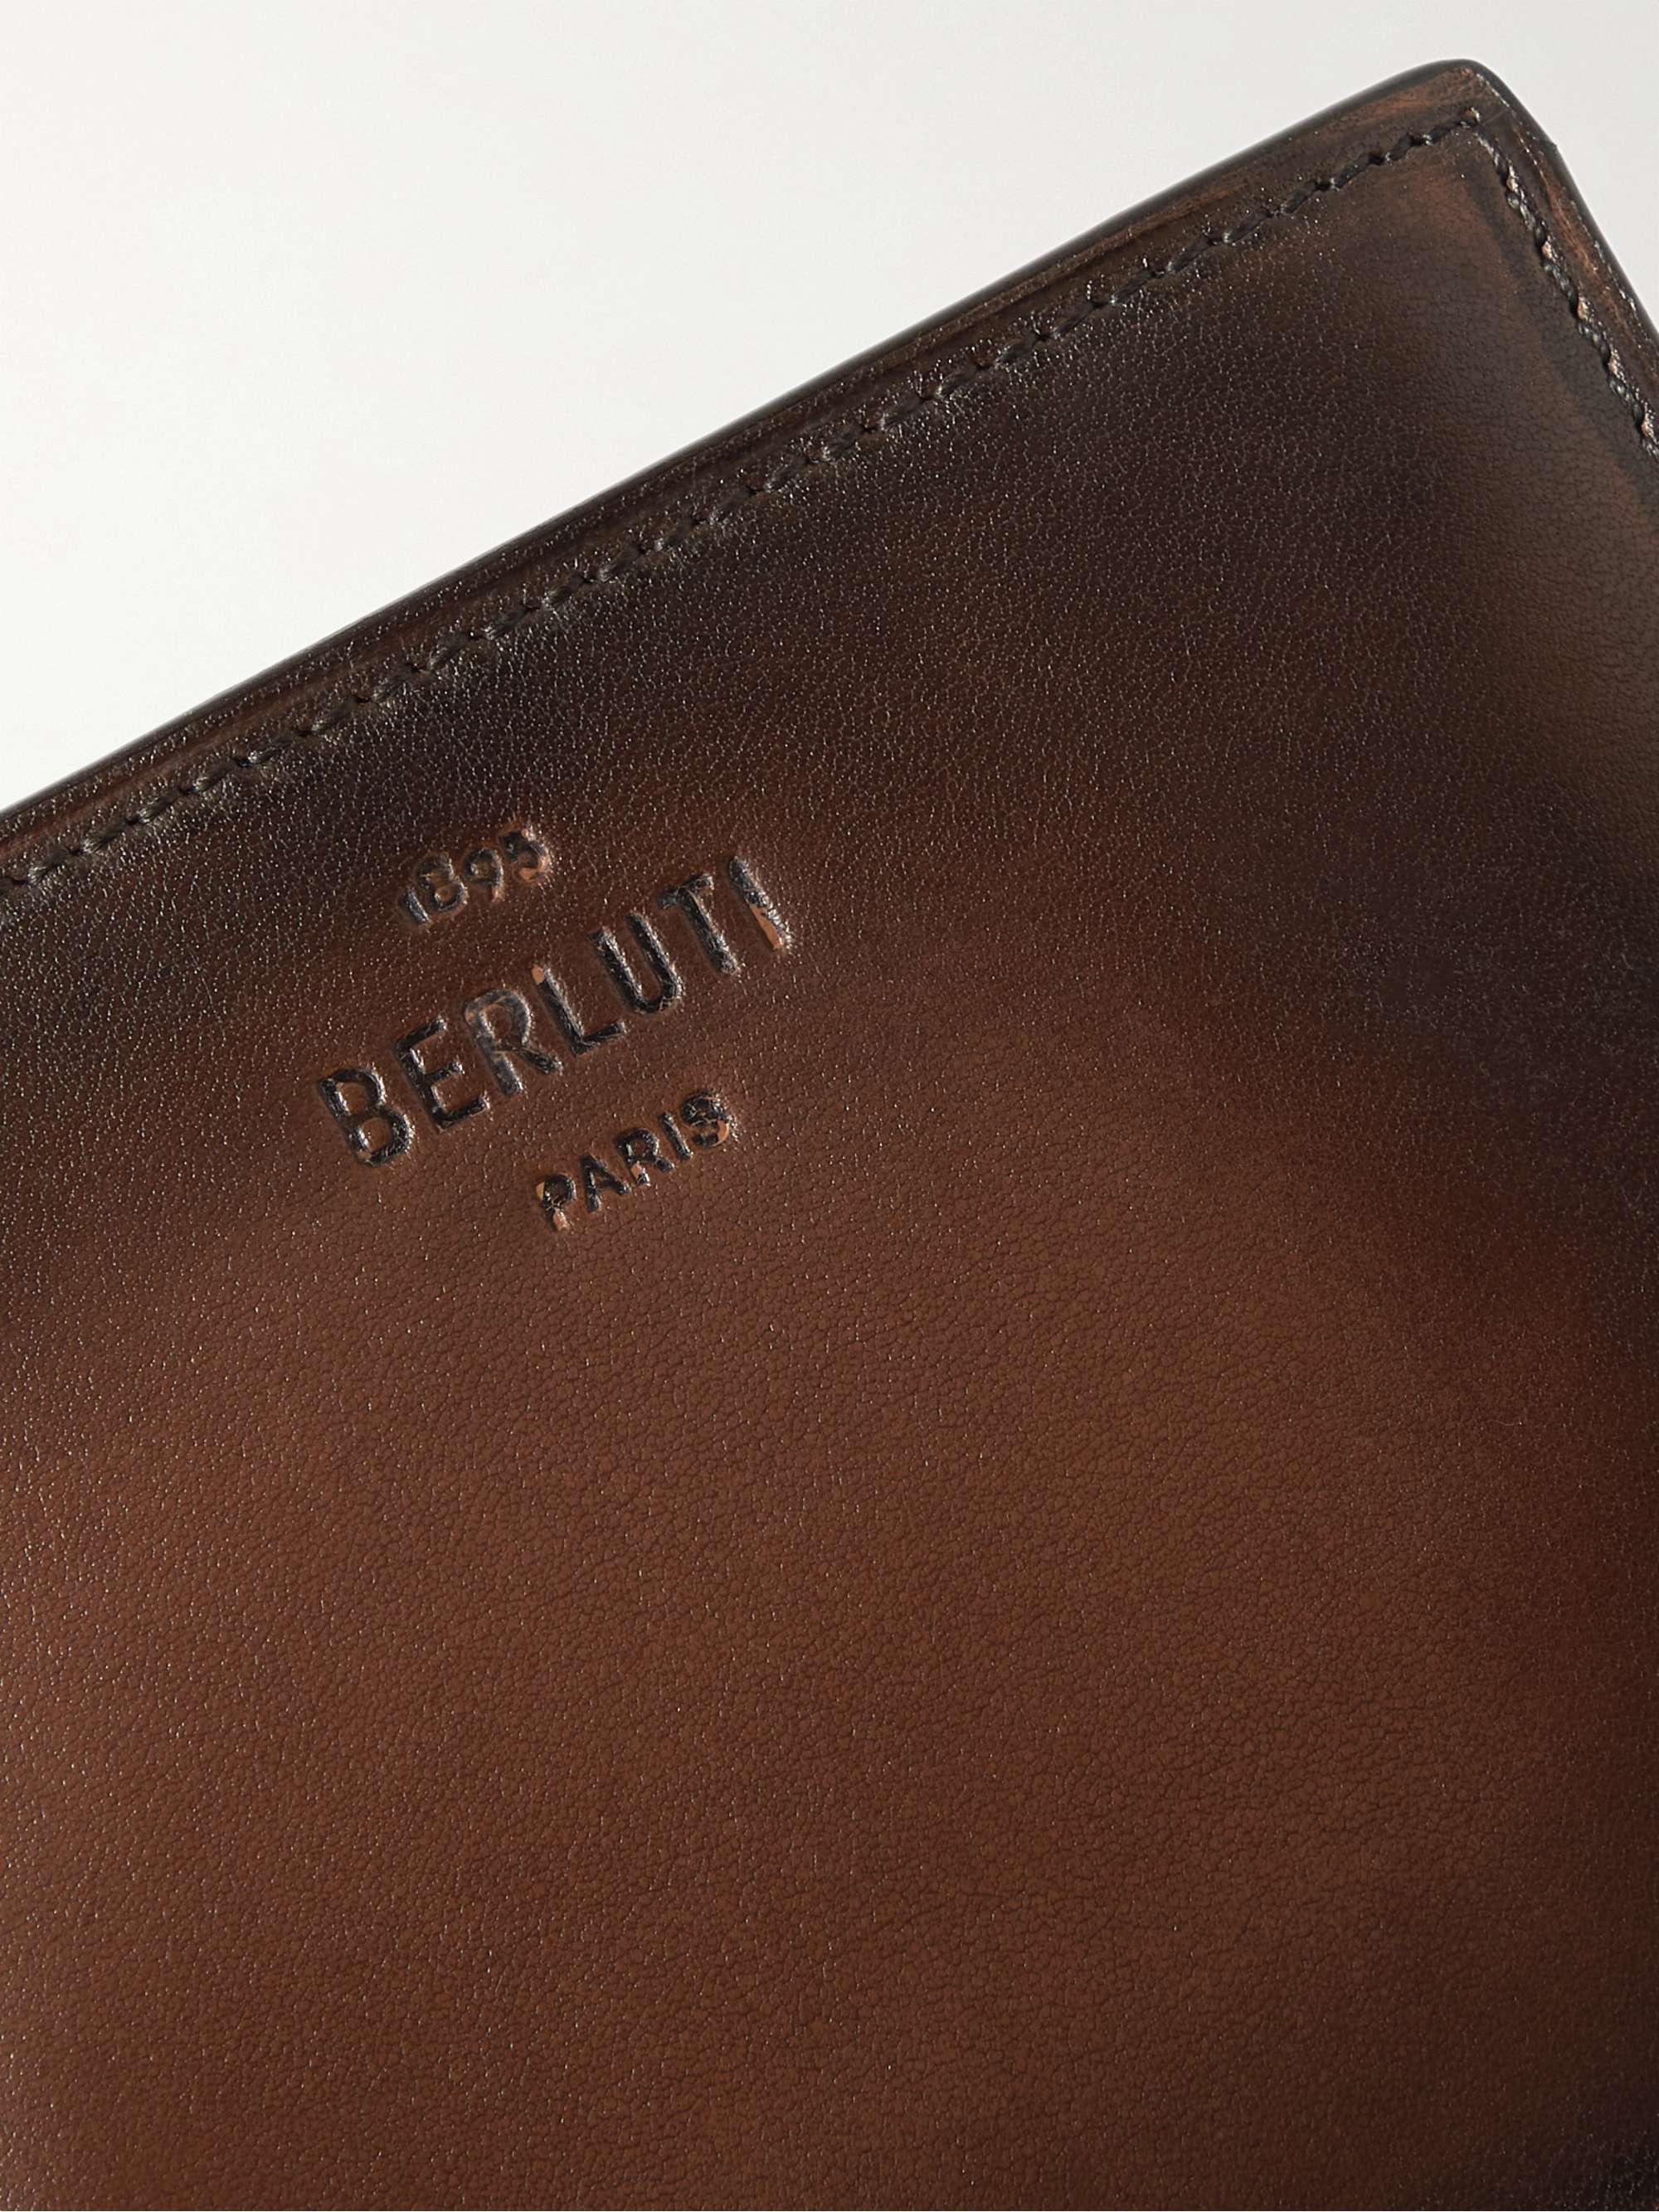 BERLUTI Leather Billfold Wallet